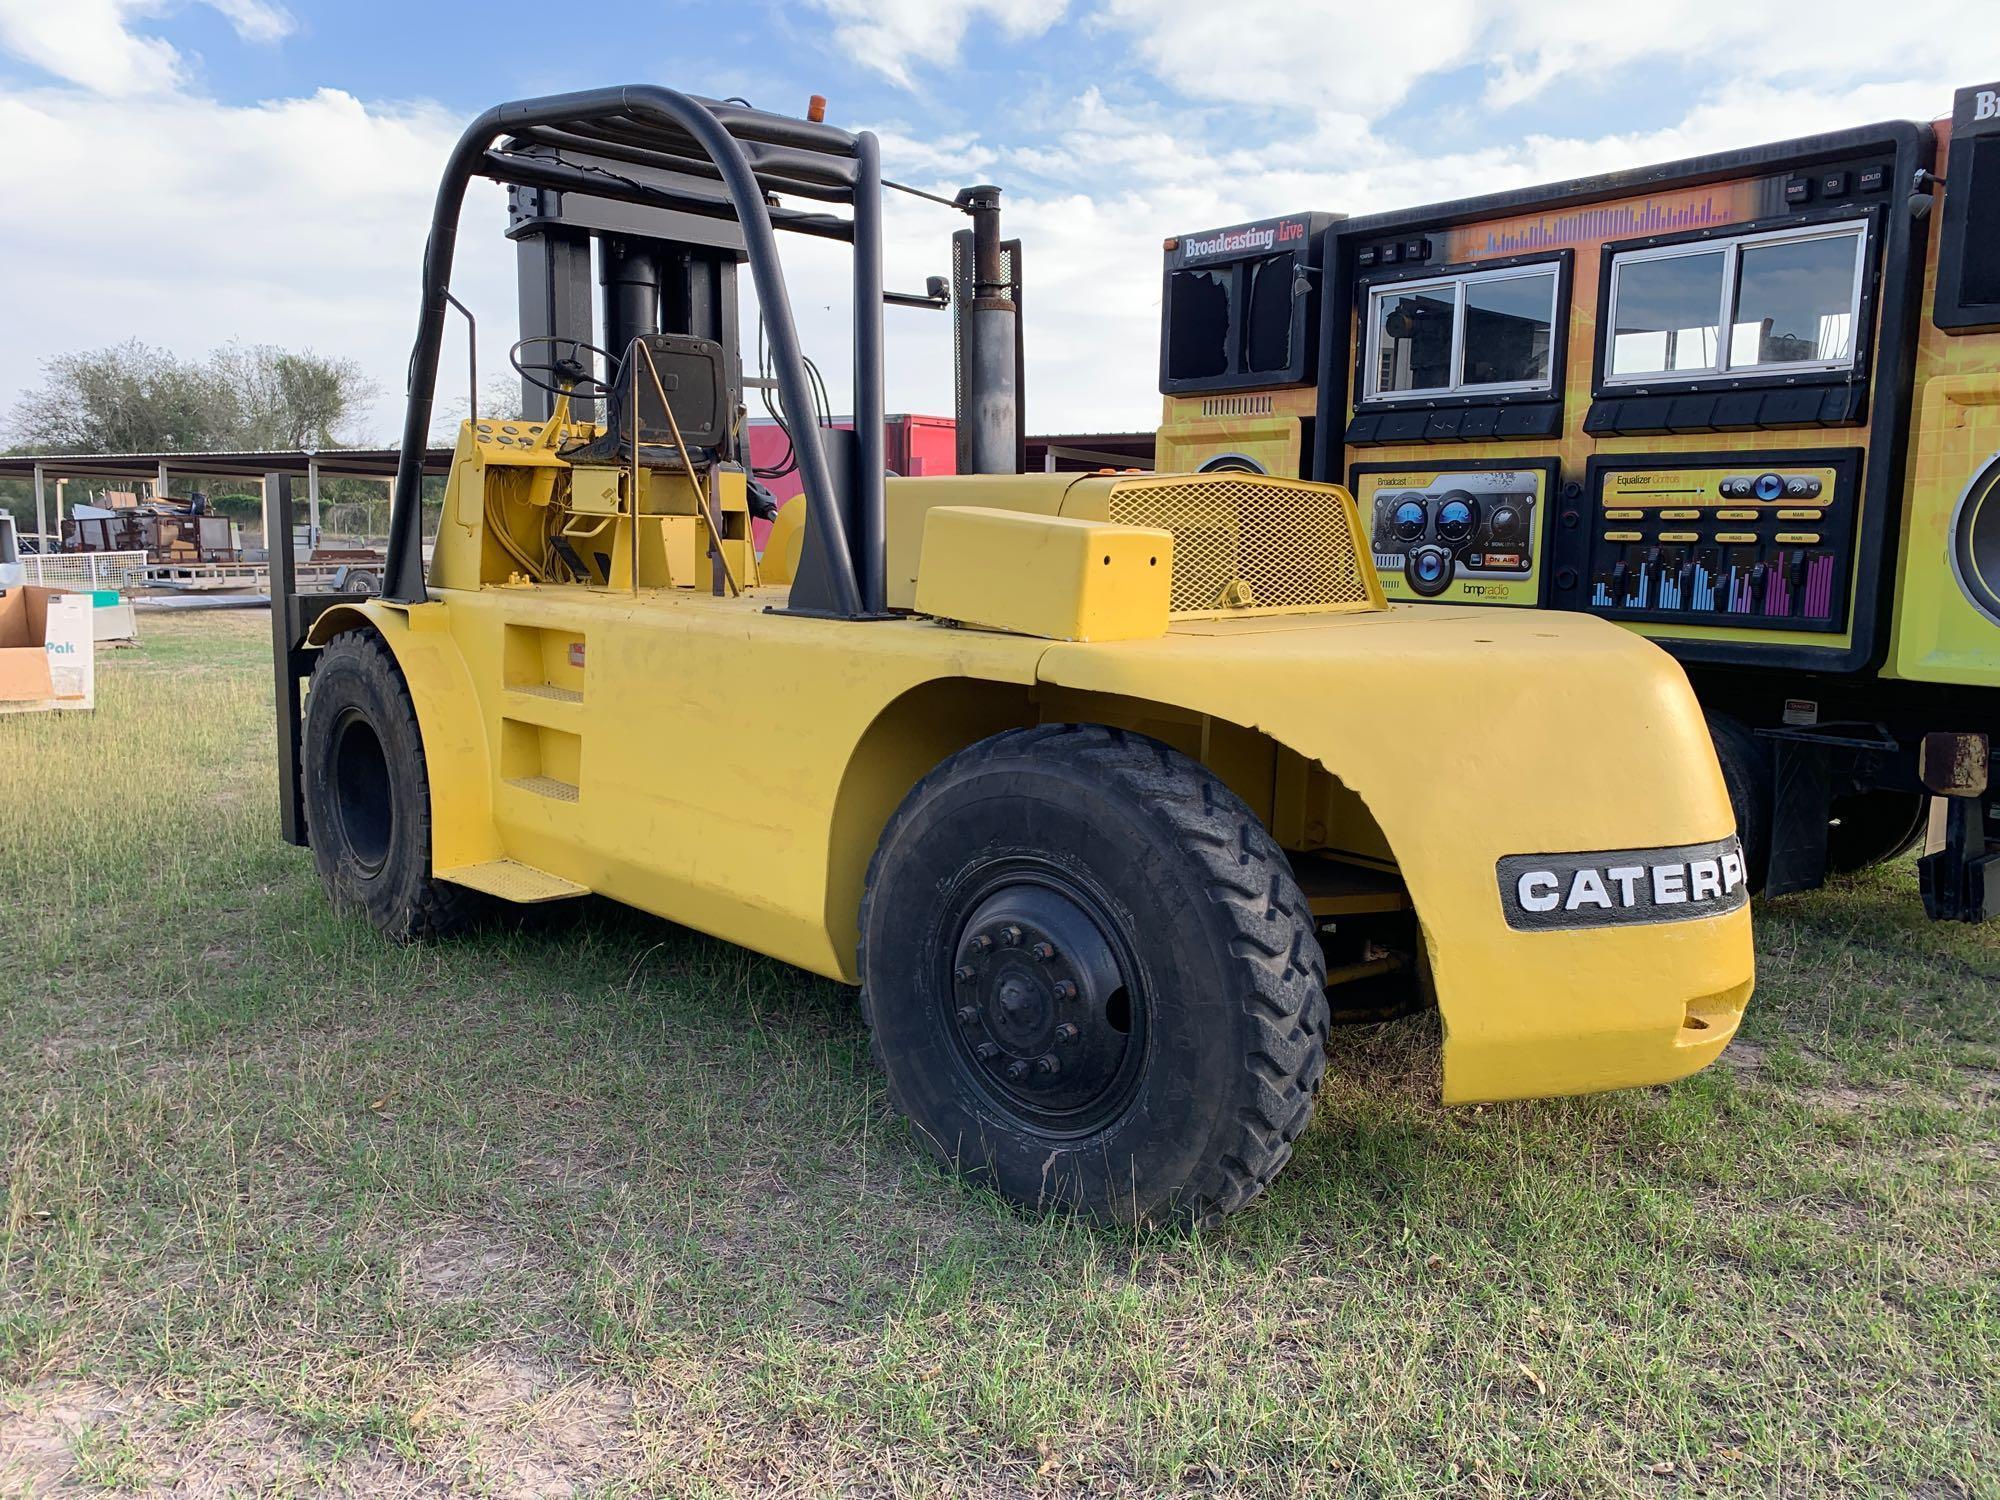 Caterpillar Forklift AM-40, Srl# 84R00148, Type D